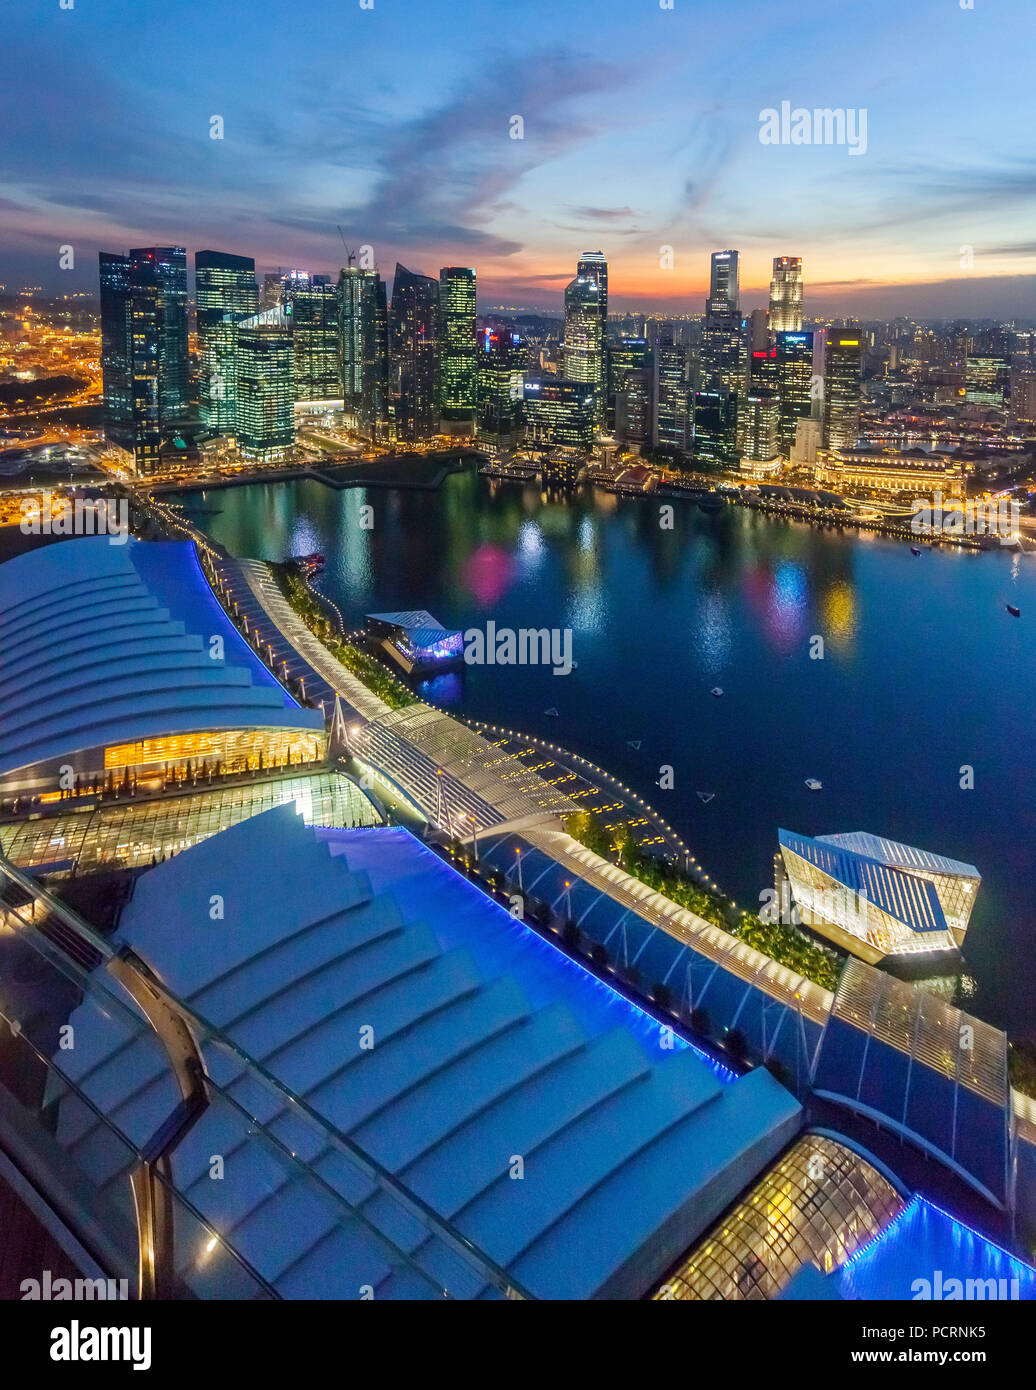 Skyline, nuit, Financial District, Central Business District, Marina Bay, Vue Panoramique, Singapour, Asie, Singapour Banque D'Images